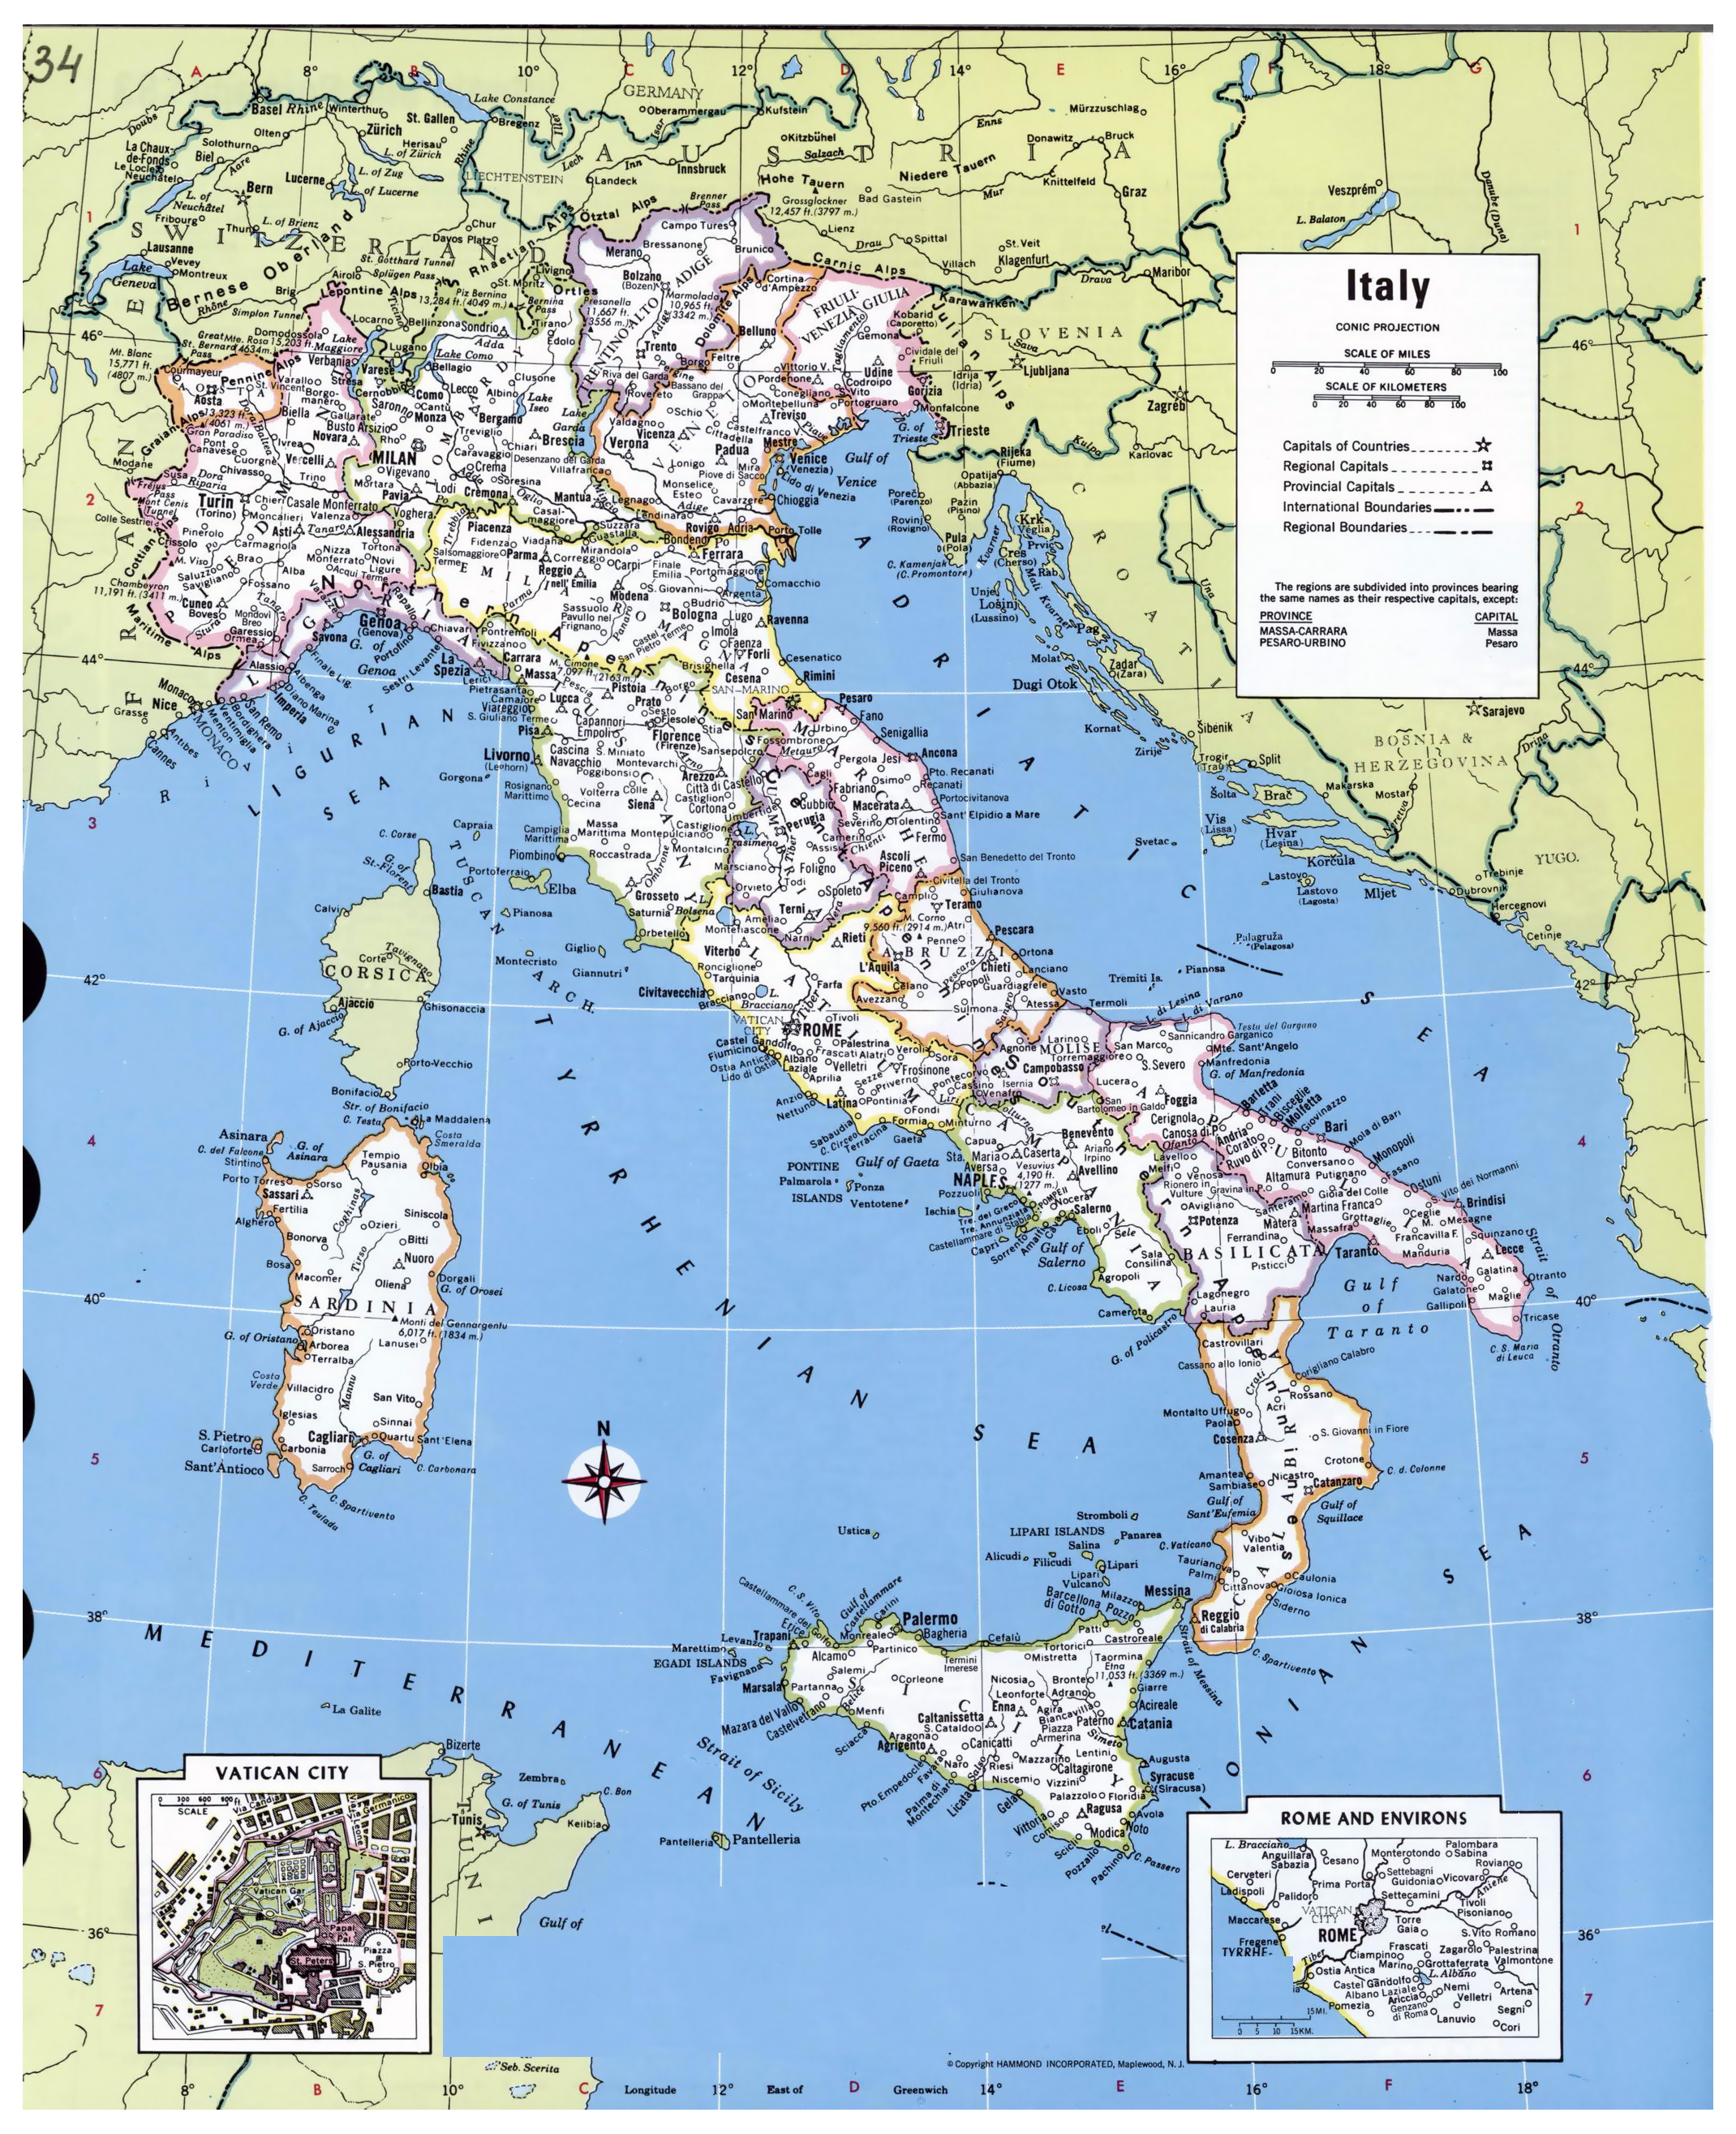 Cartina geografia italia politica pdf to jpg - bpoat